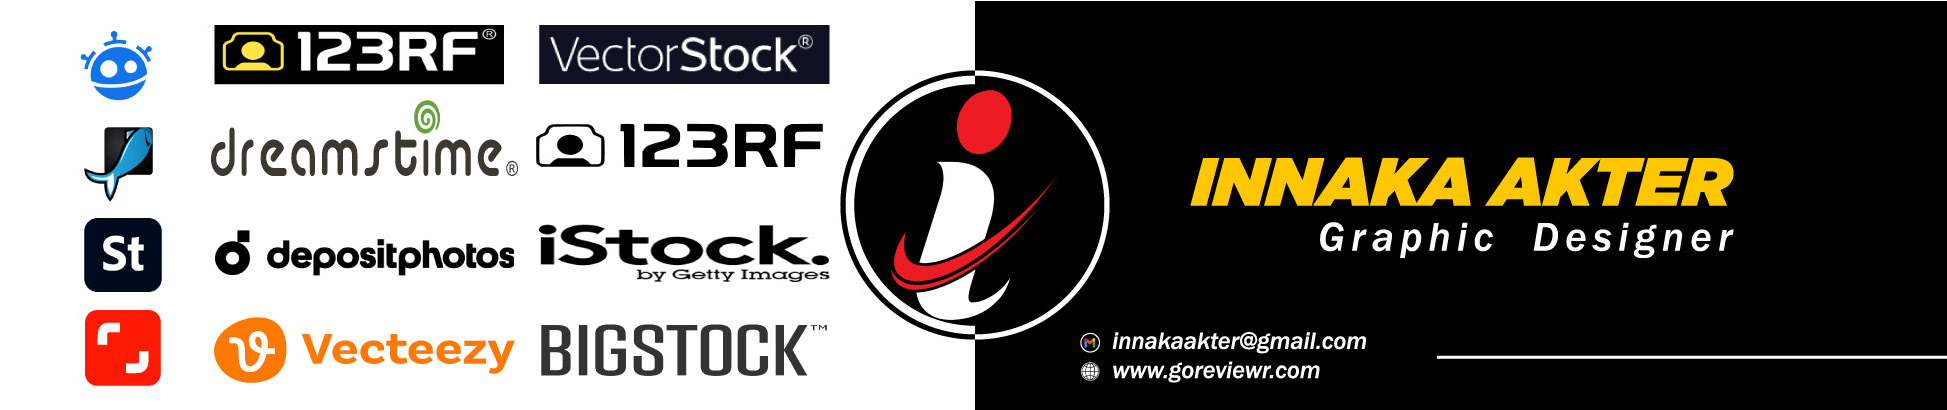 Innaka Akter's profile banner